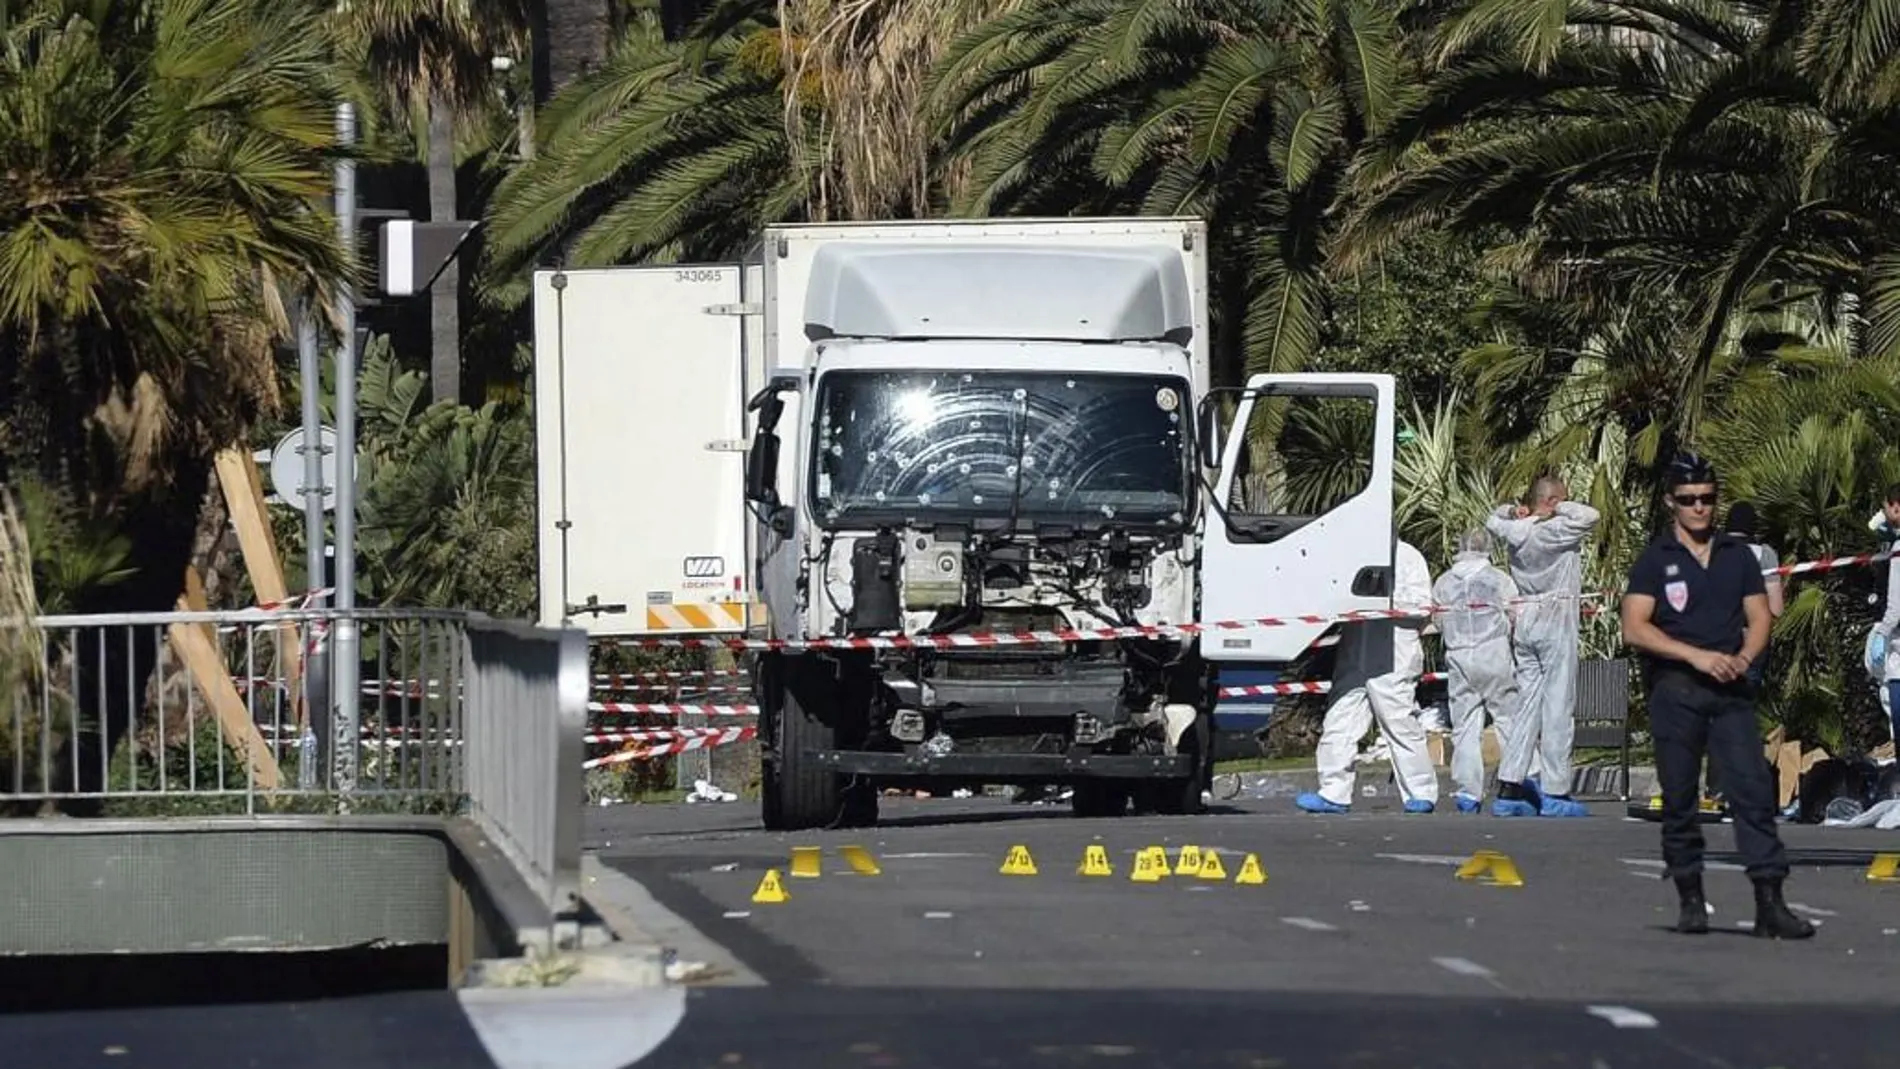 Varios policías inspeccionan el estado del camión con el que fue cometido el atentado en Niza, Francia